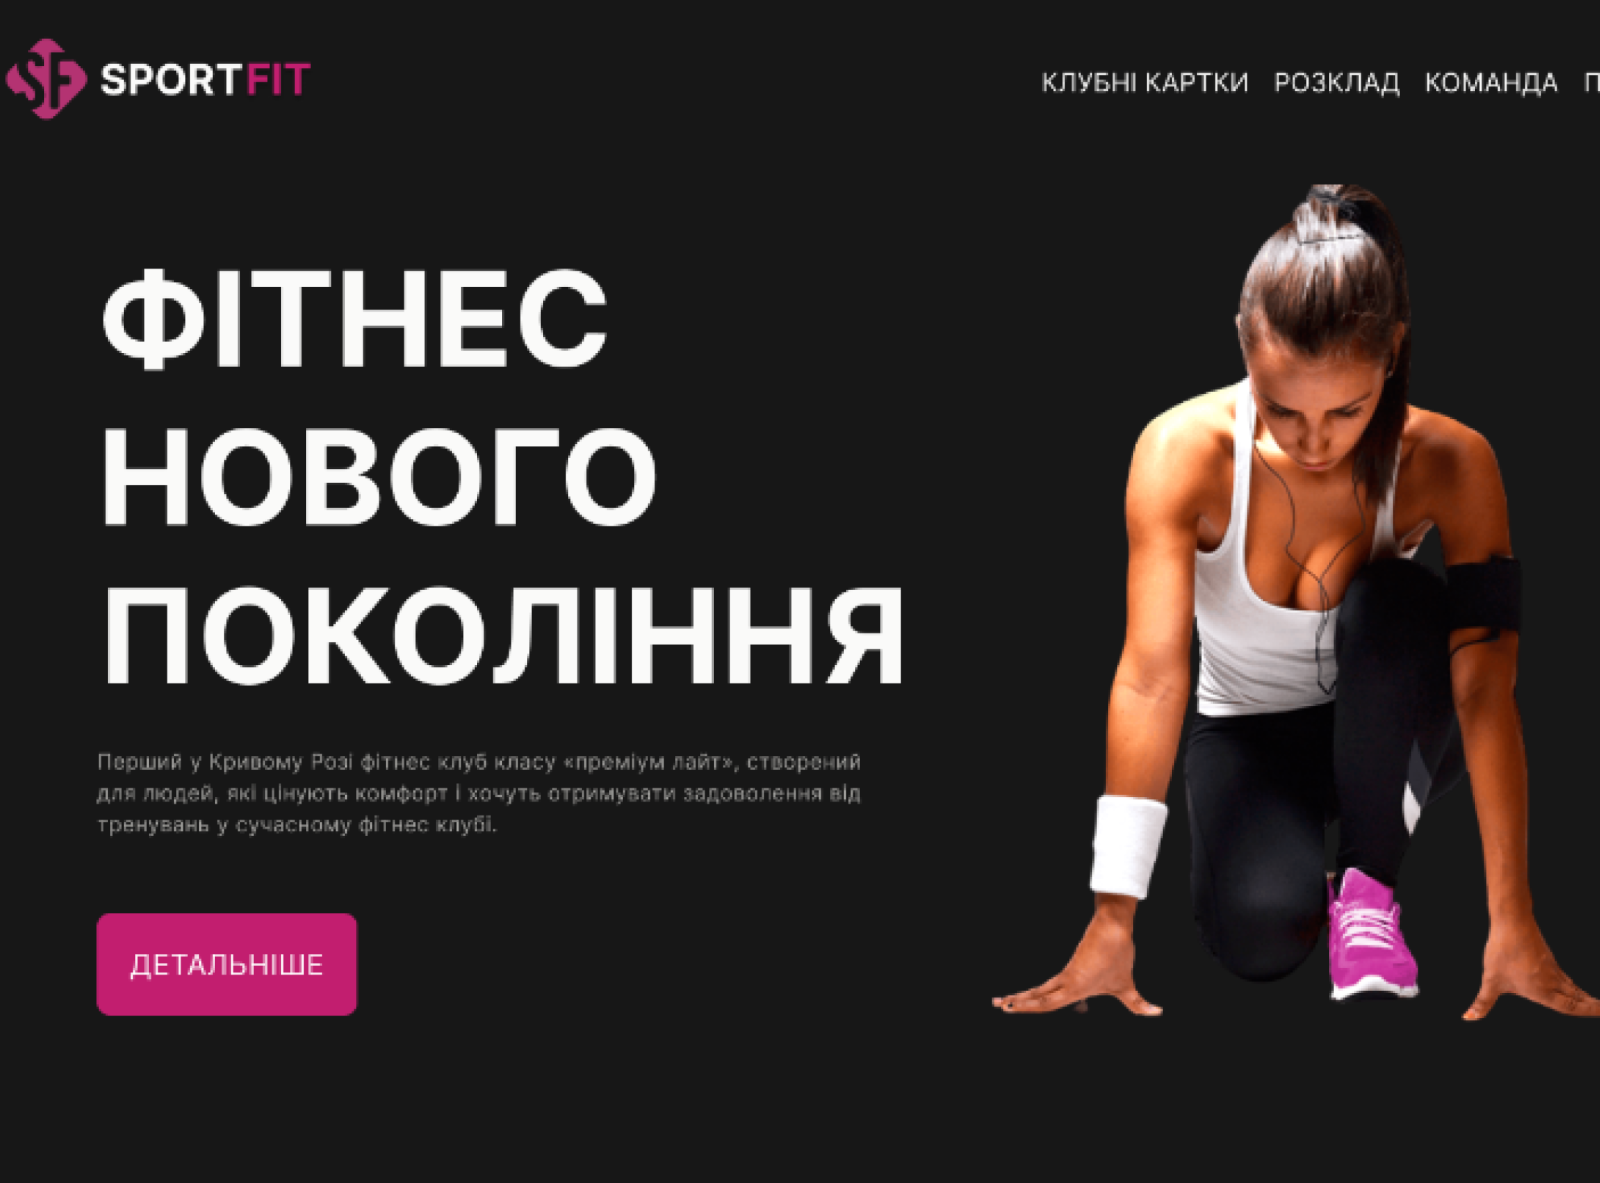 SportFit - Fitness Landing Page - Gym Website by Mr. Brshk on Dribbble